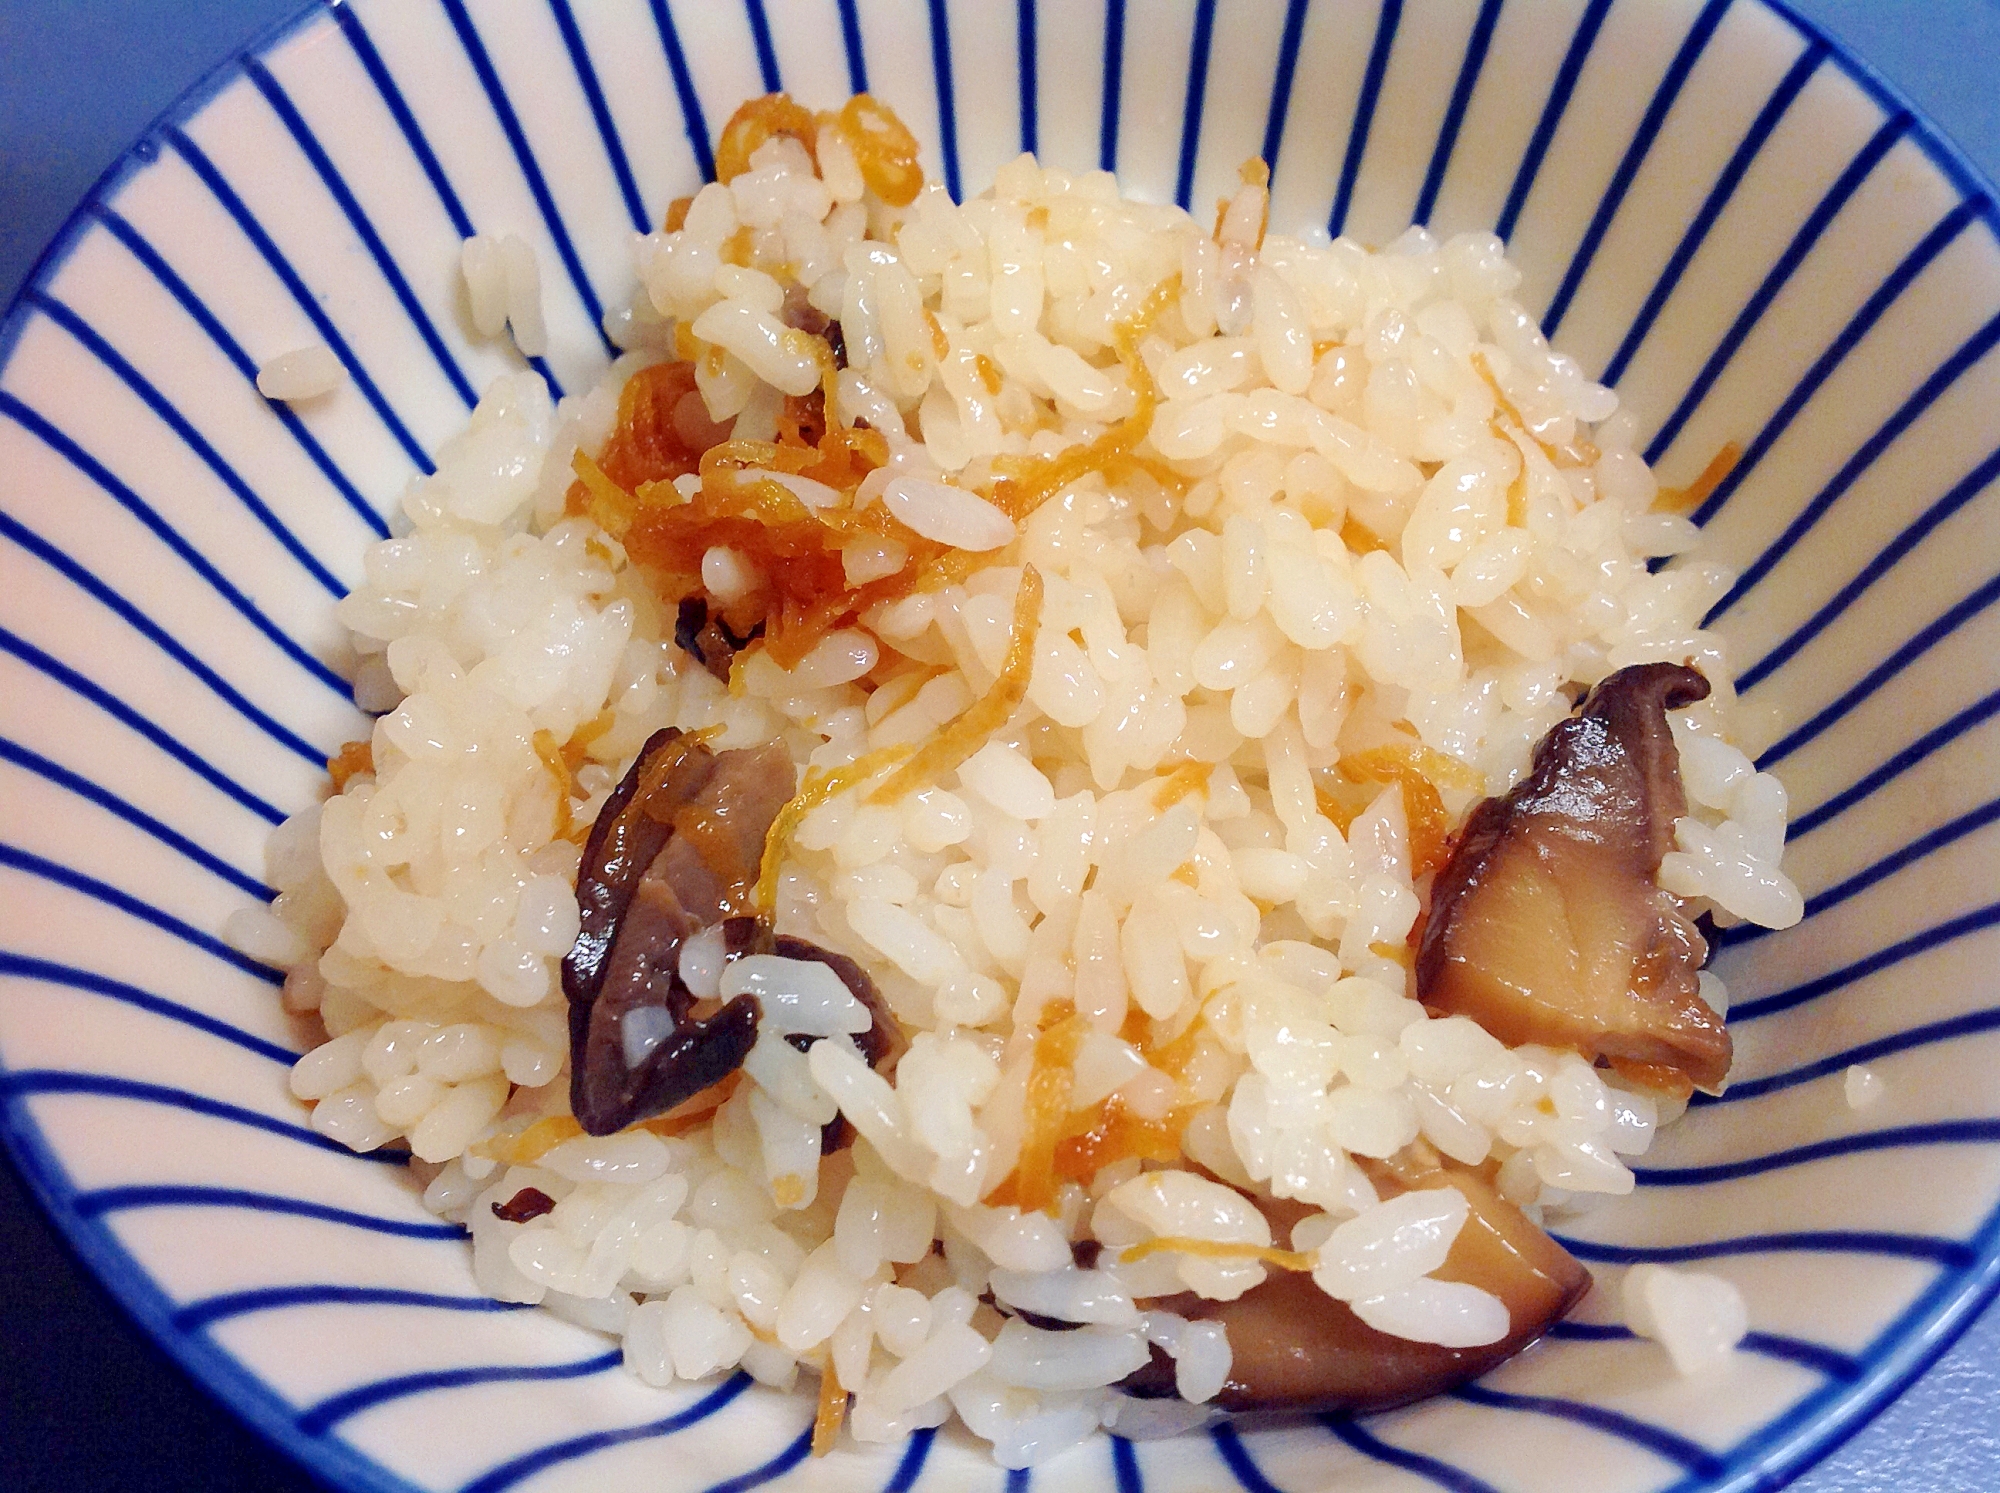 ニンジンと生椎茸で混ぜご飯